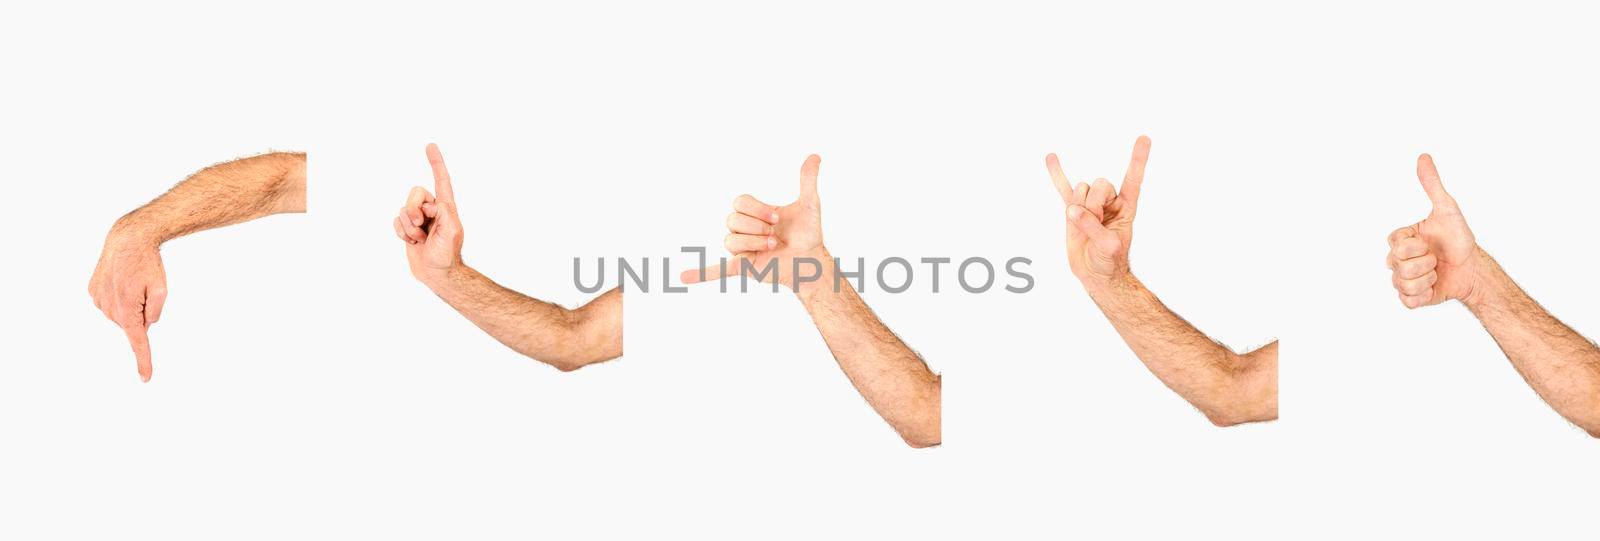 crop hands with various gestures